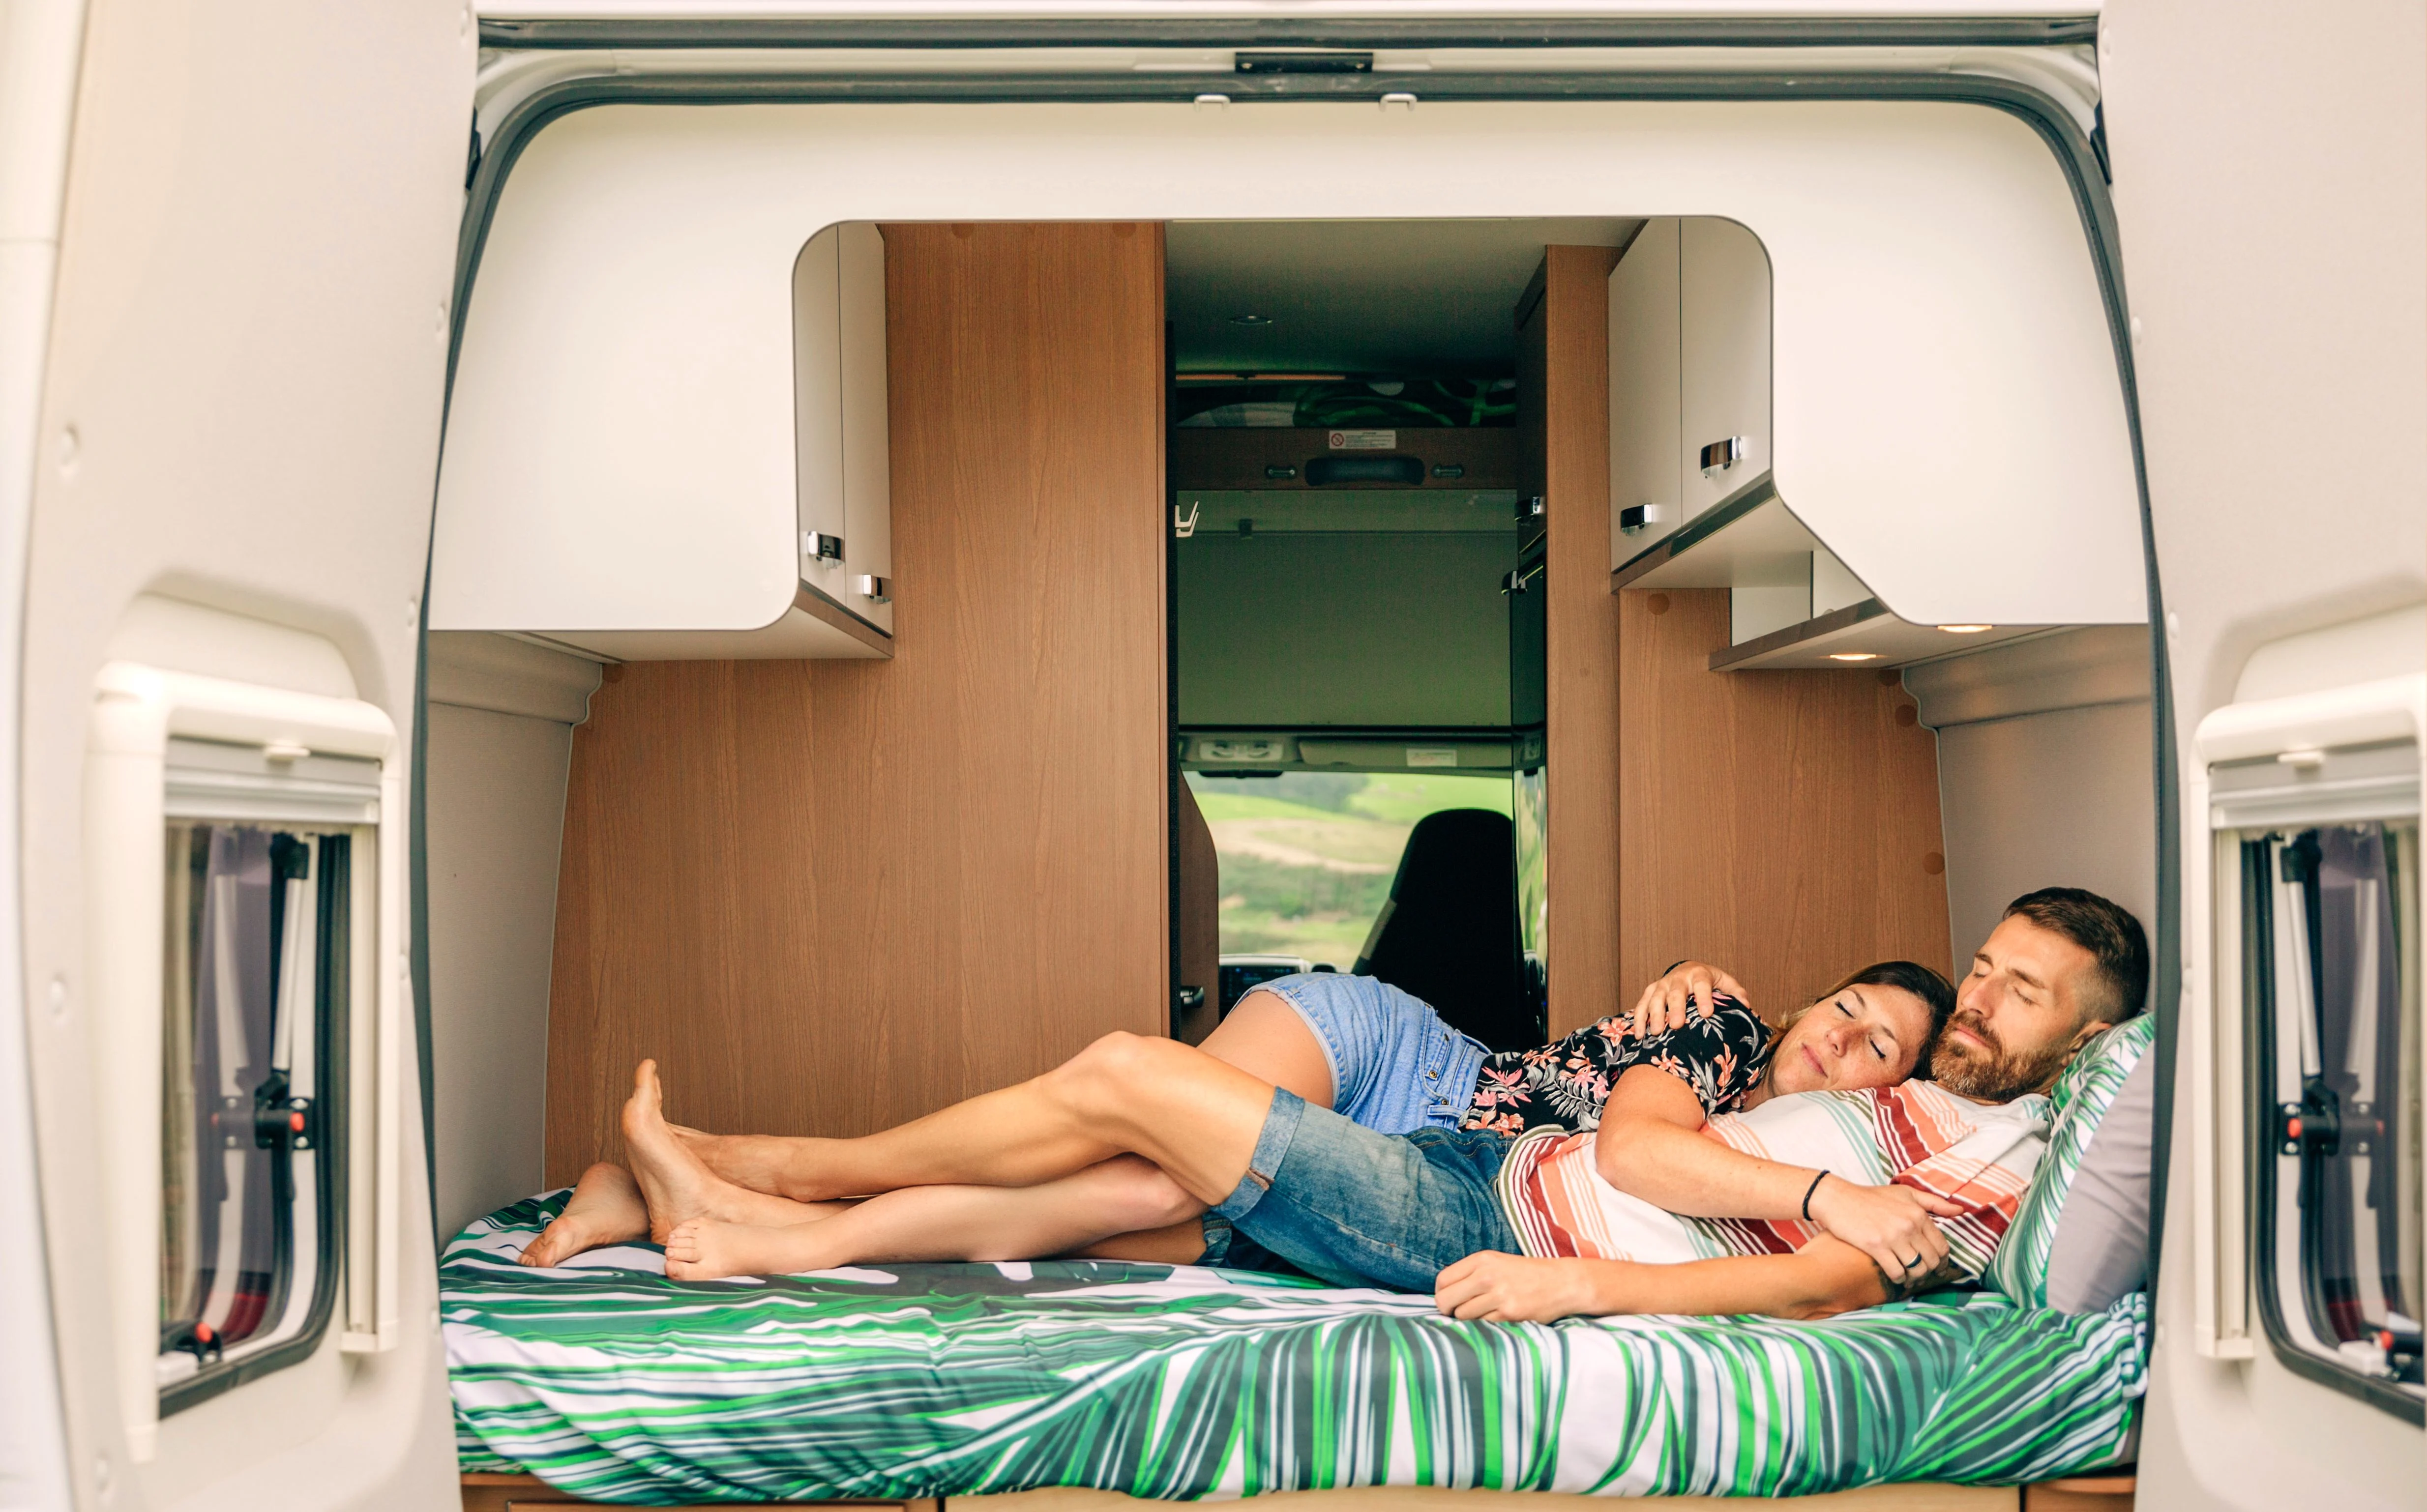 Sleeping in back of van while camping